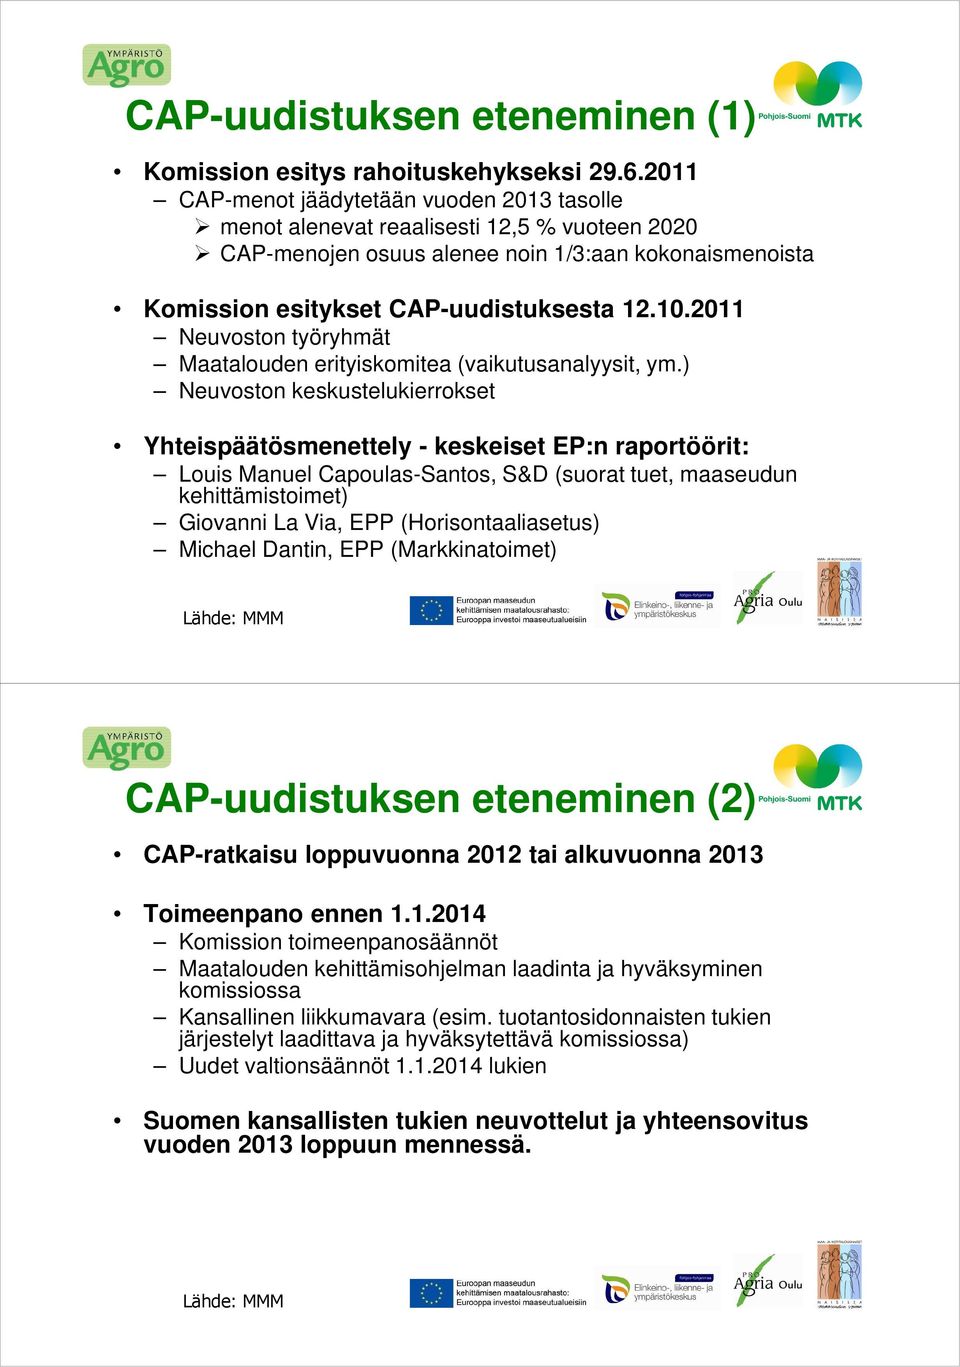 2011 Neuvoston työryhmät Maatalouden erityiskomitea (vaikutusanalyysit, ym.